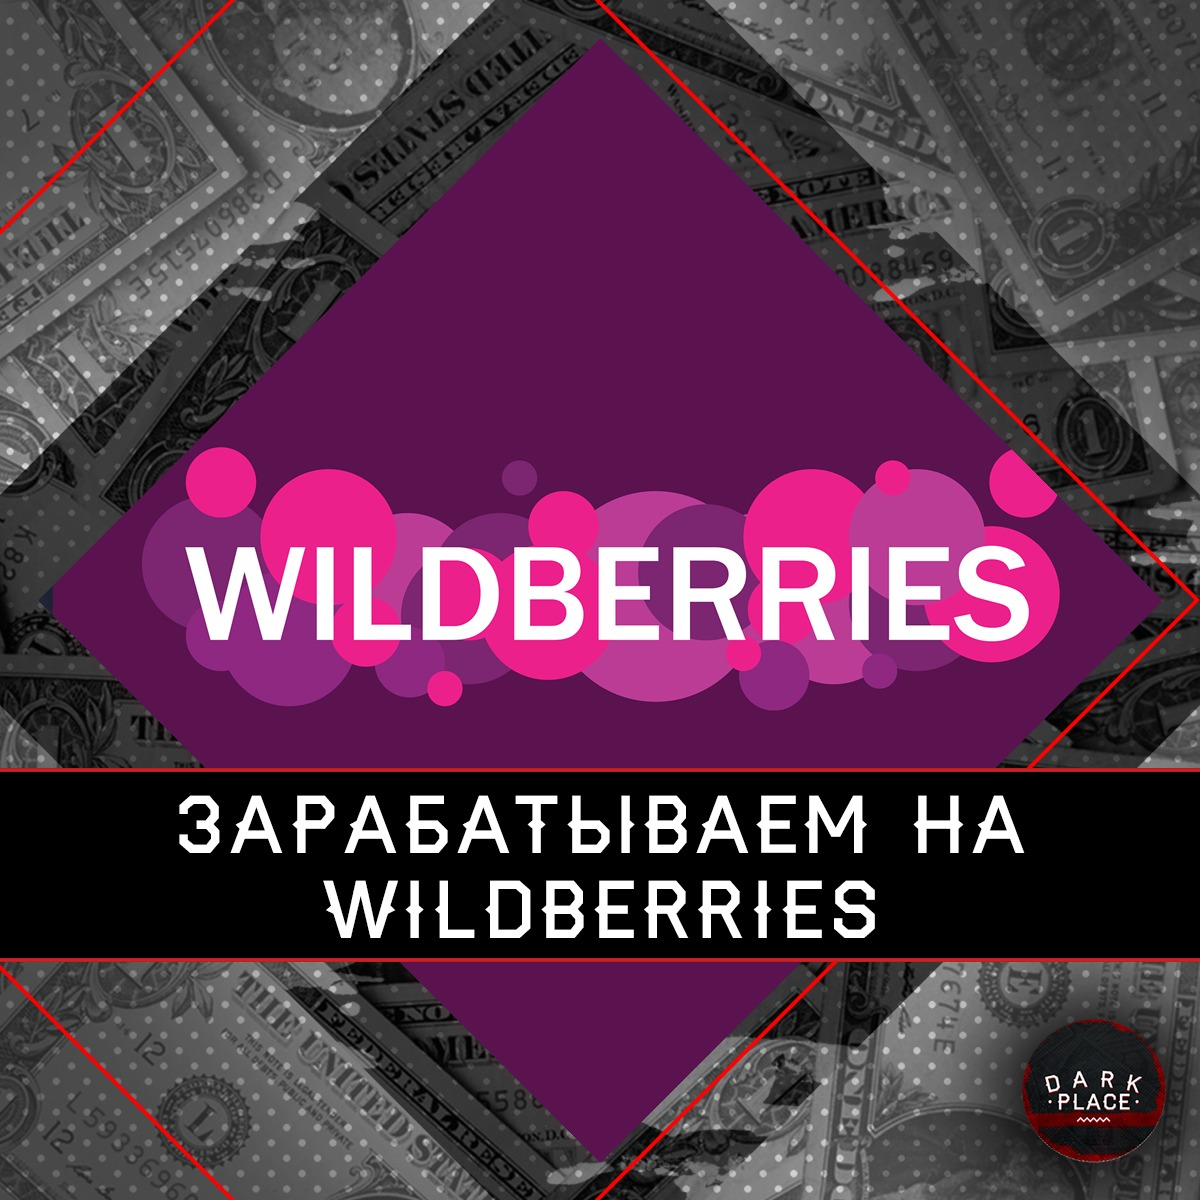 Как получать доход с помощью Wildberries